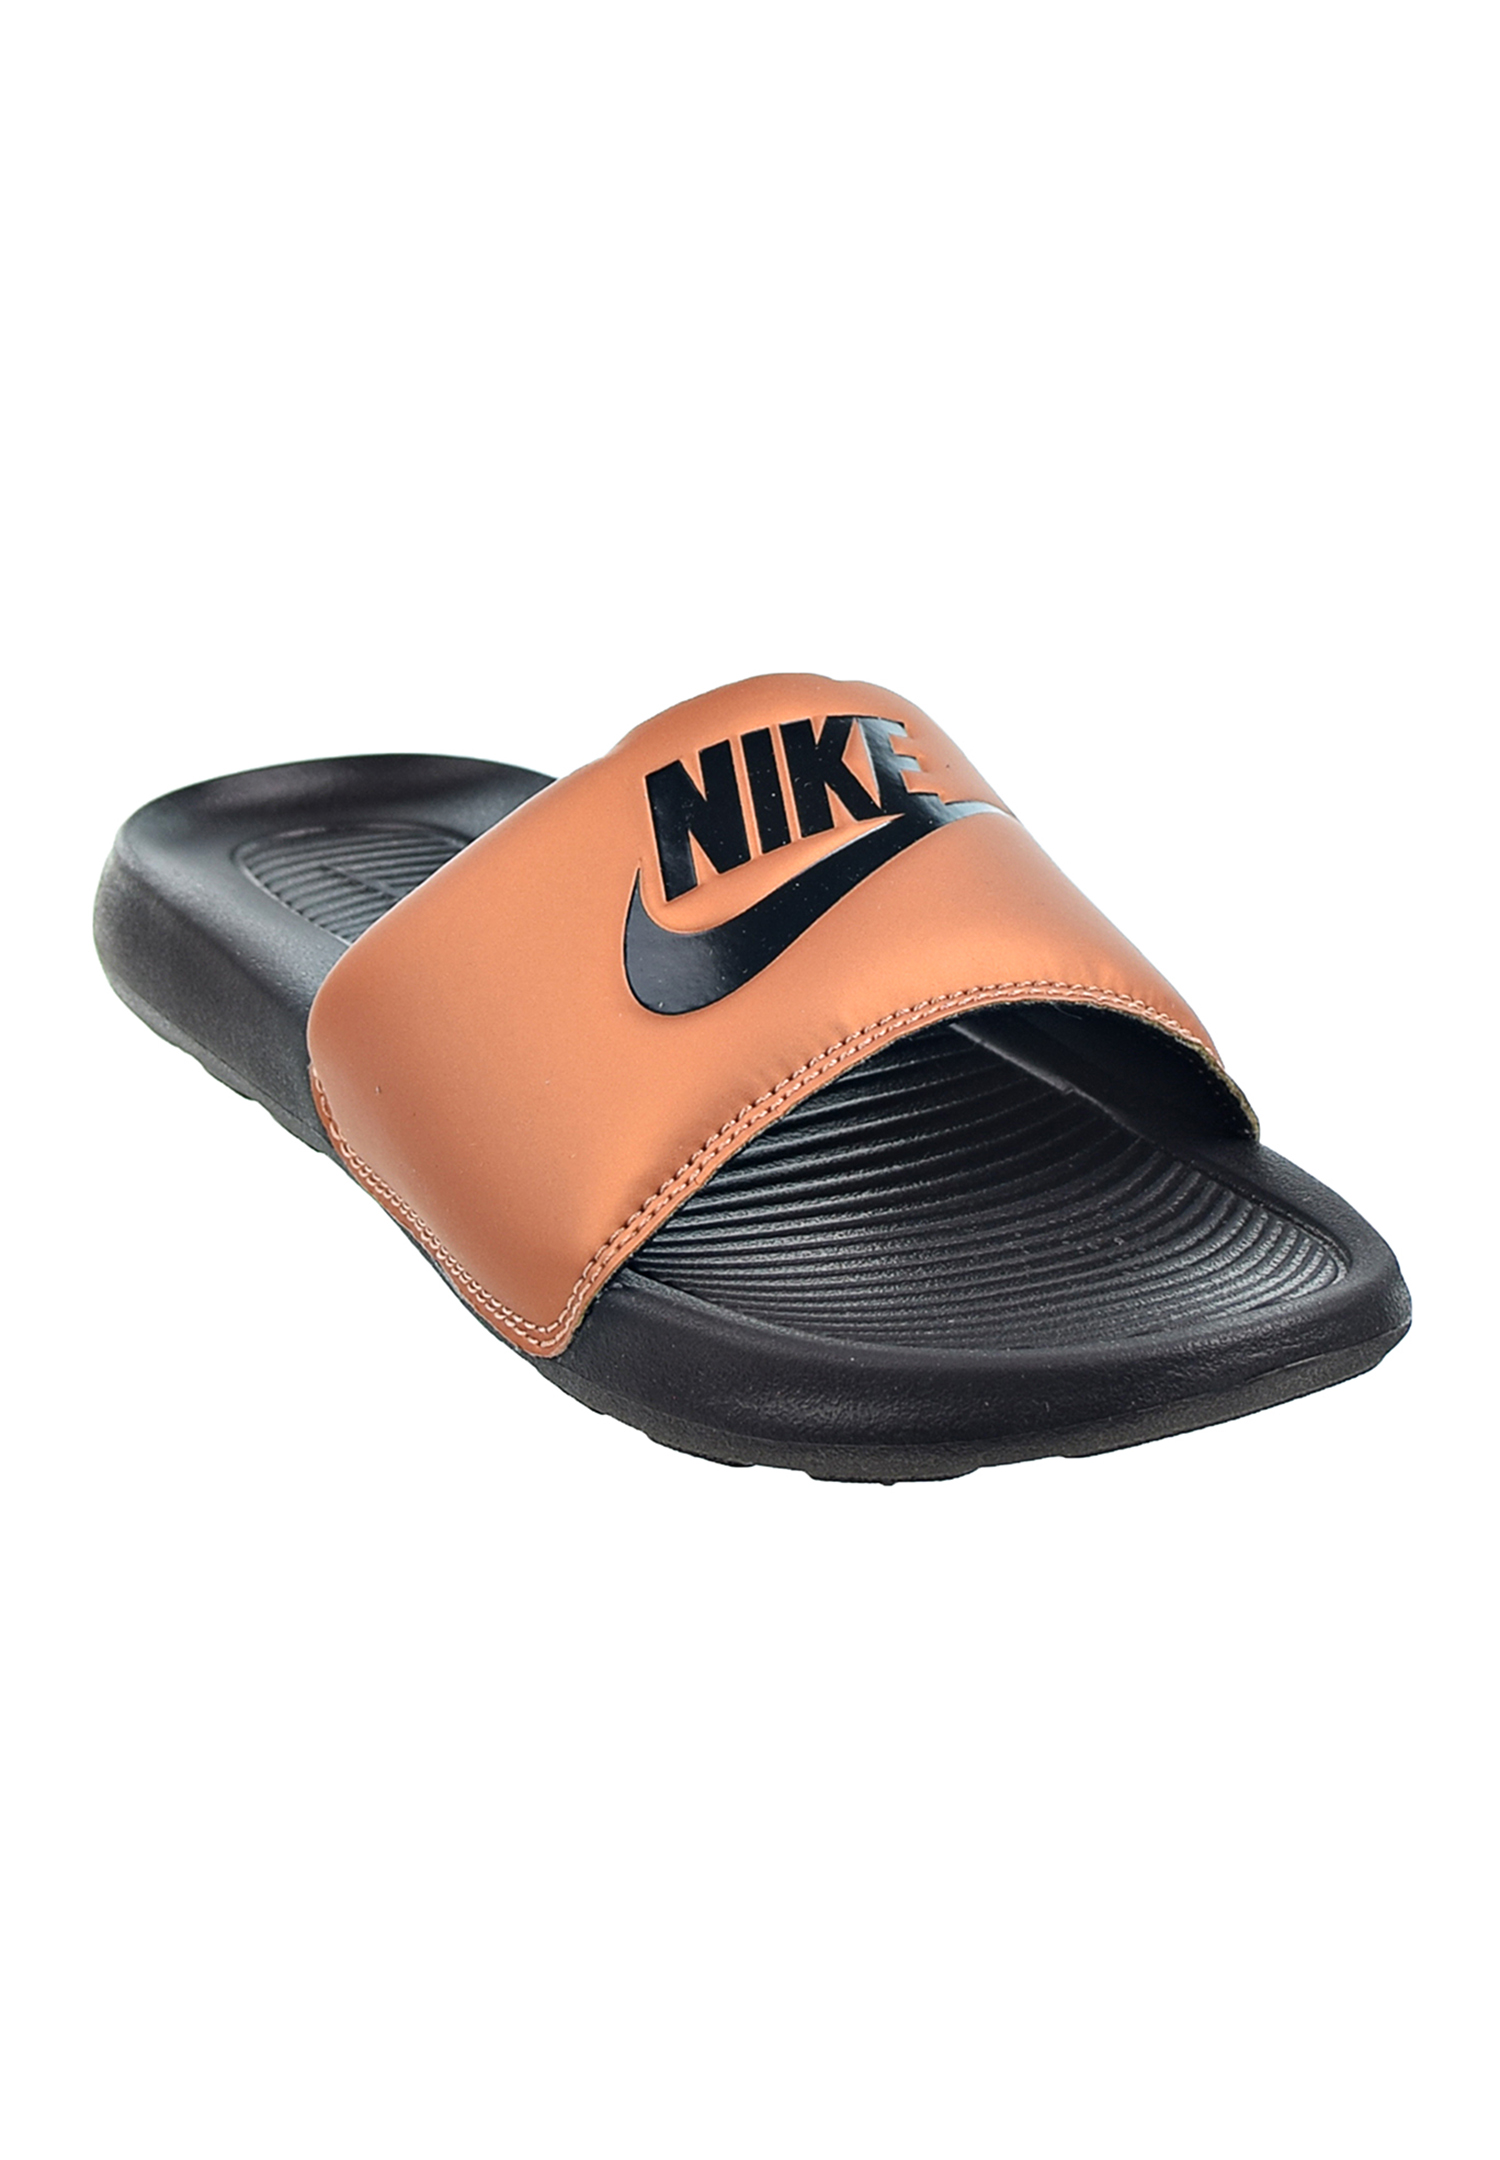 Nike Victori One Slide Damen Badelatschen Schlappe CN9677 003 schwarz/kupfer